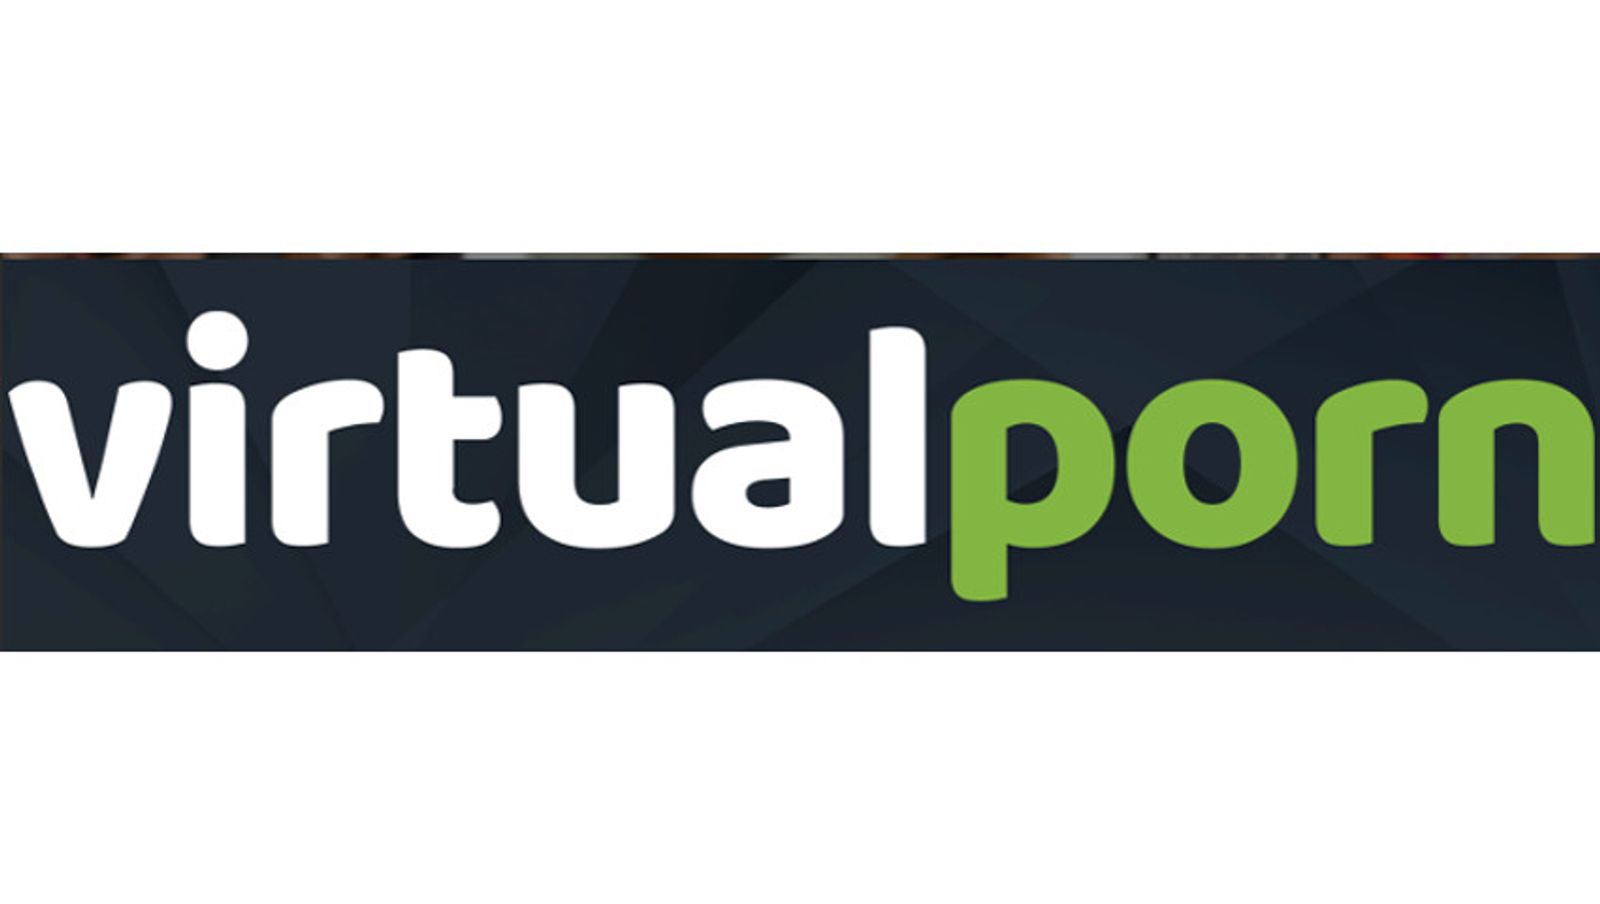 Virtual.porn Launches 